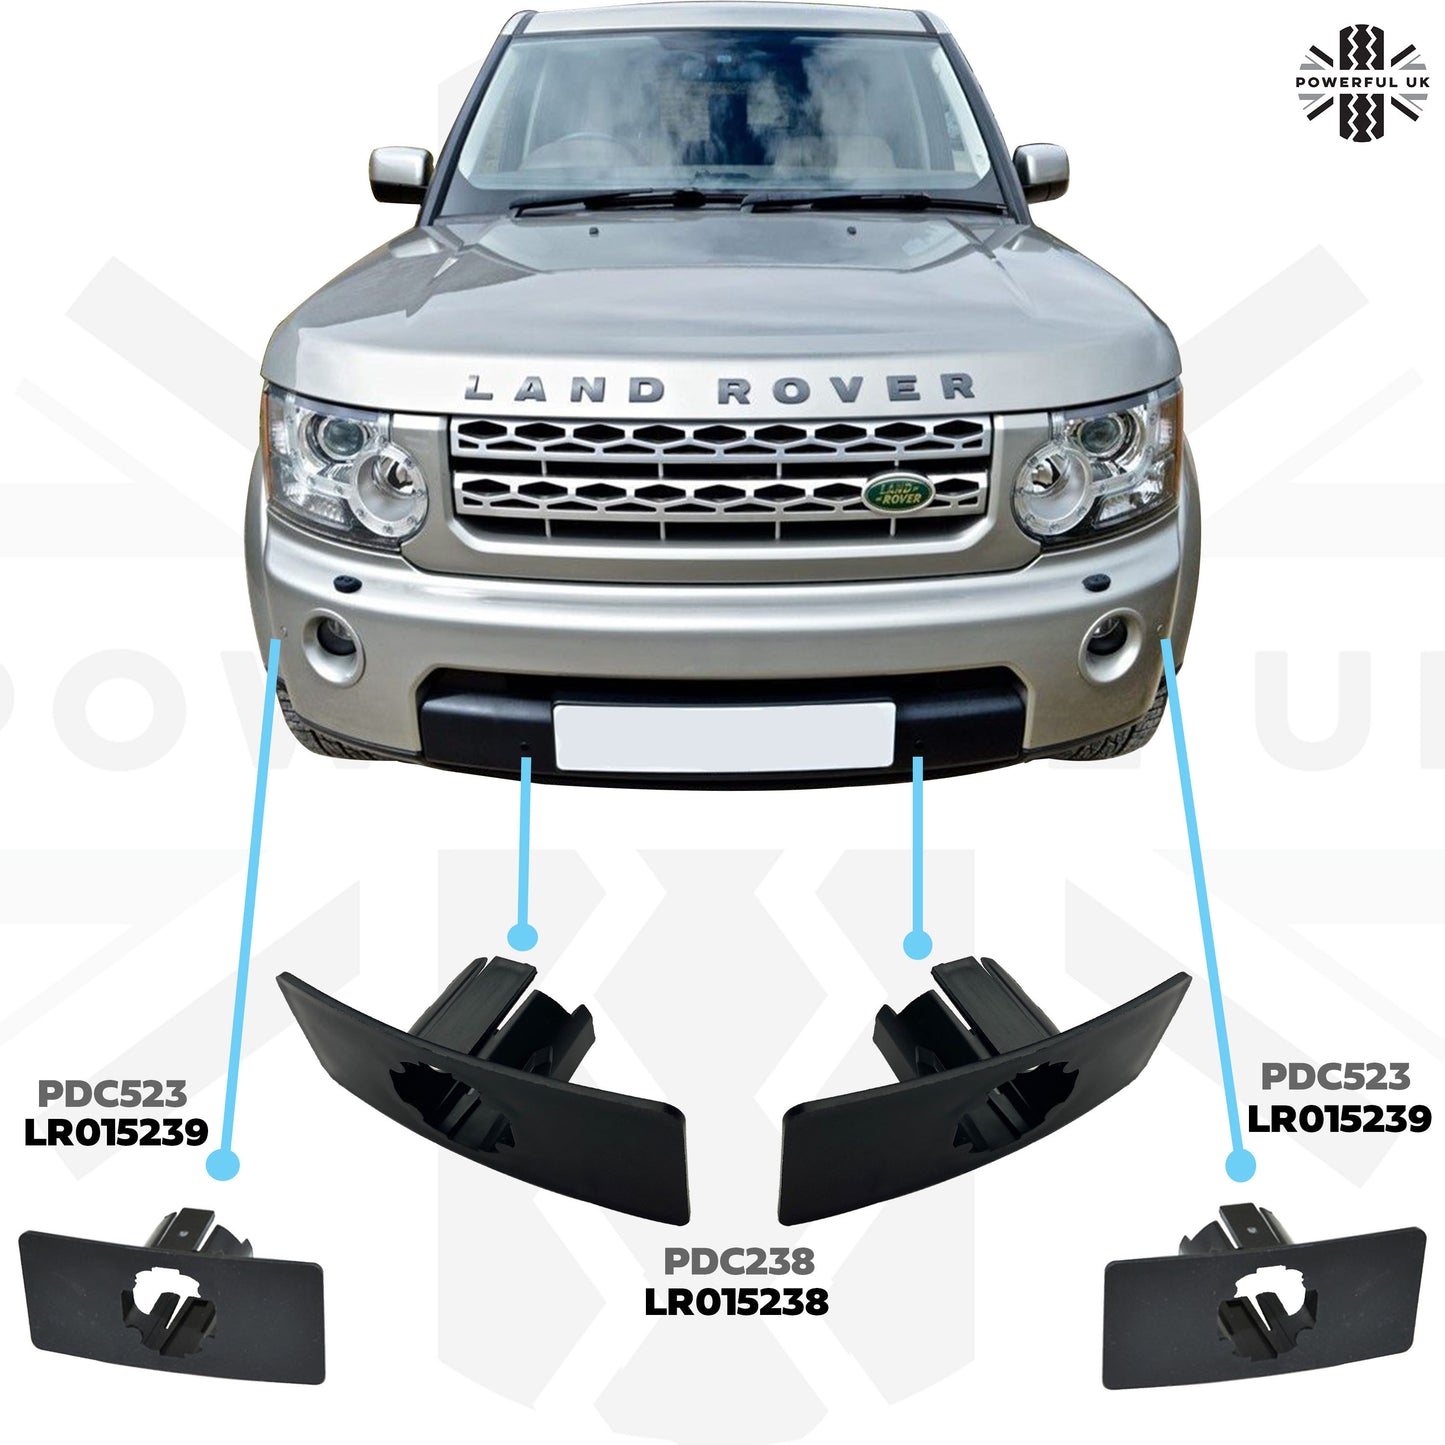 Genuine Parking Sensor Holder Bracket for Front Bumper on Discovery 4